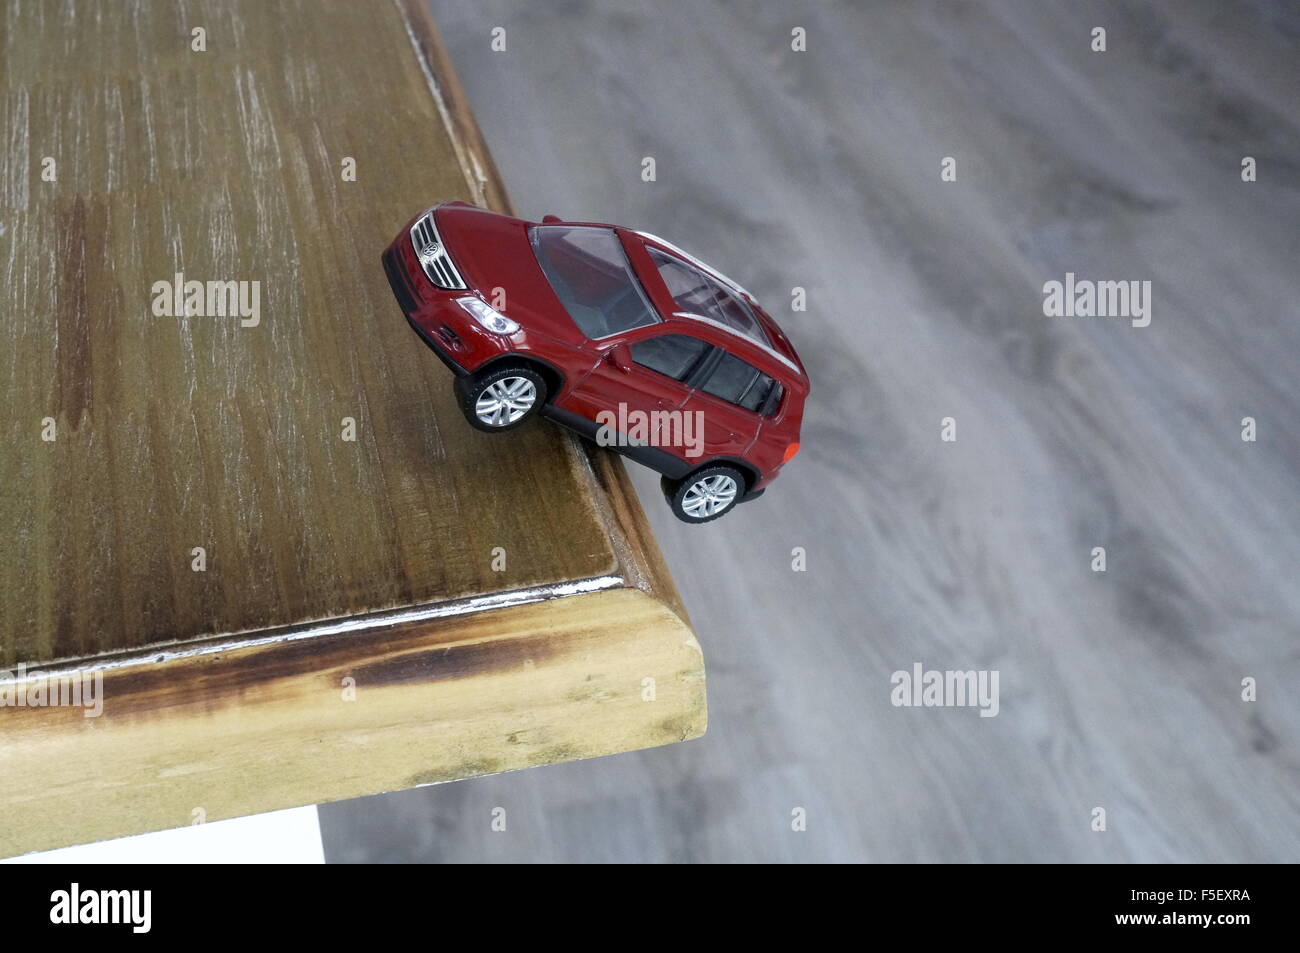 ILLUSTRATION - fällt ein Volkswagen-Auto-Modell "VW Tiguan" von der Kante des Tisches. Das Foto wurde am 15. Oktober 2015. Foto: S. Steinach - kein Draht-SERVICE – Stockfoto